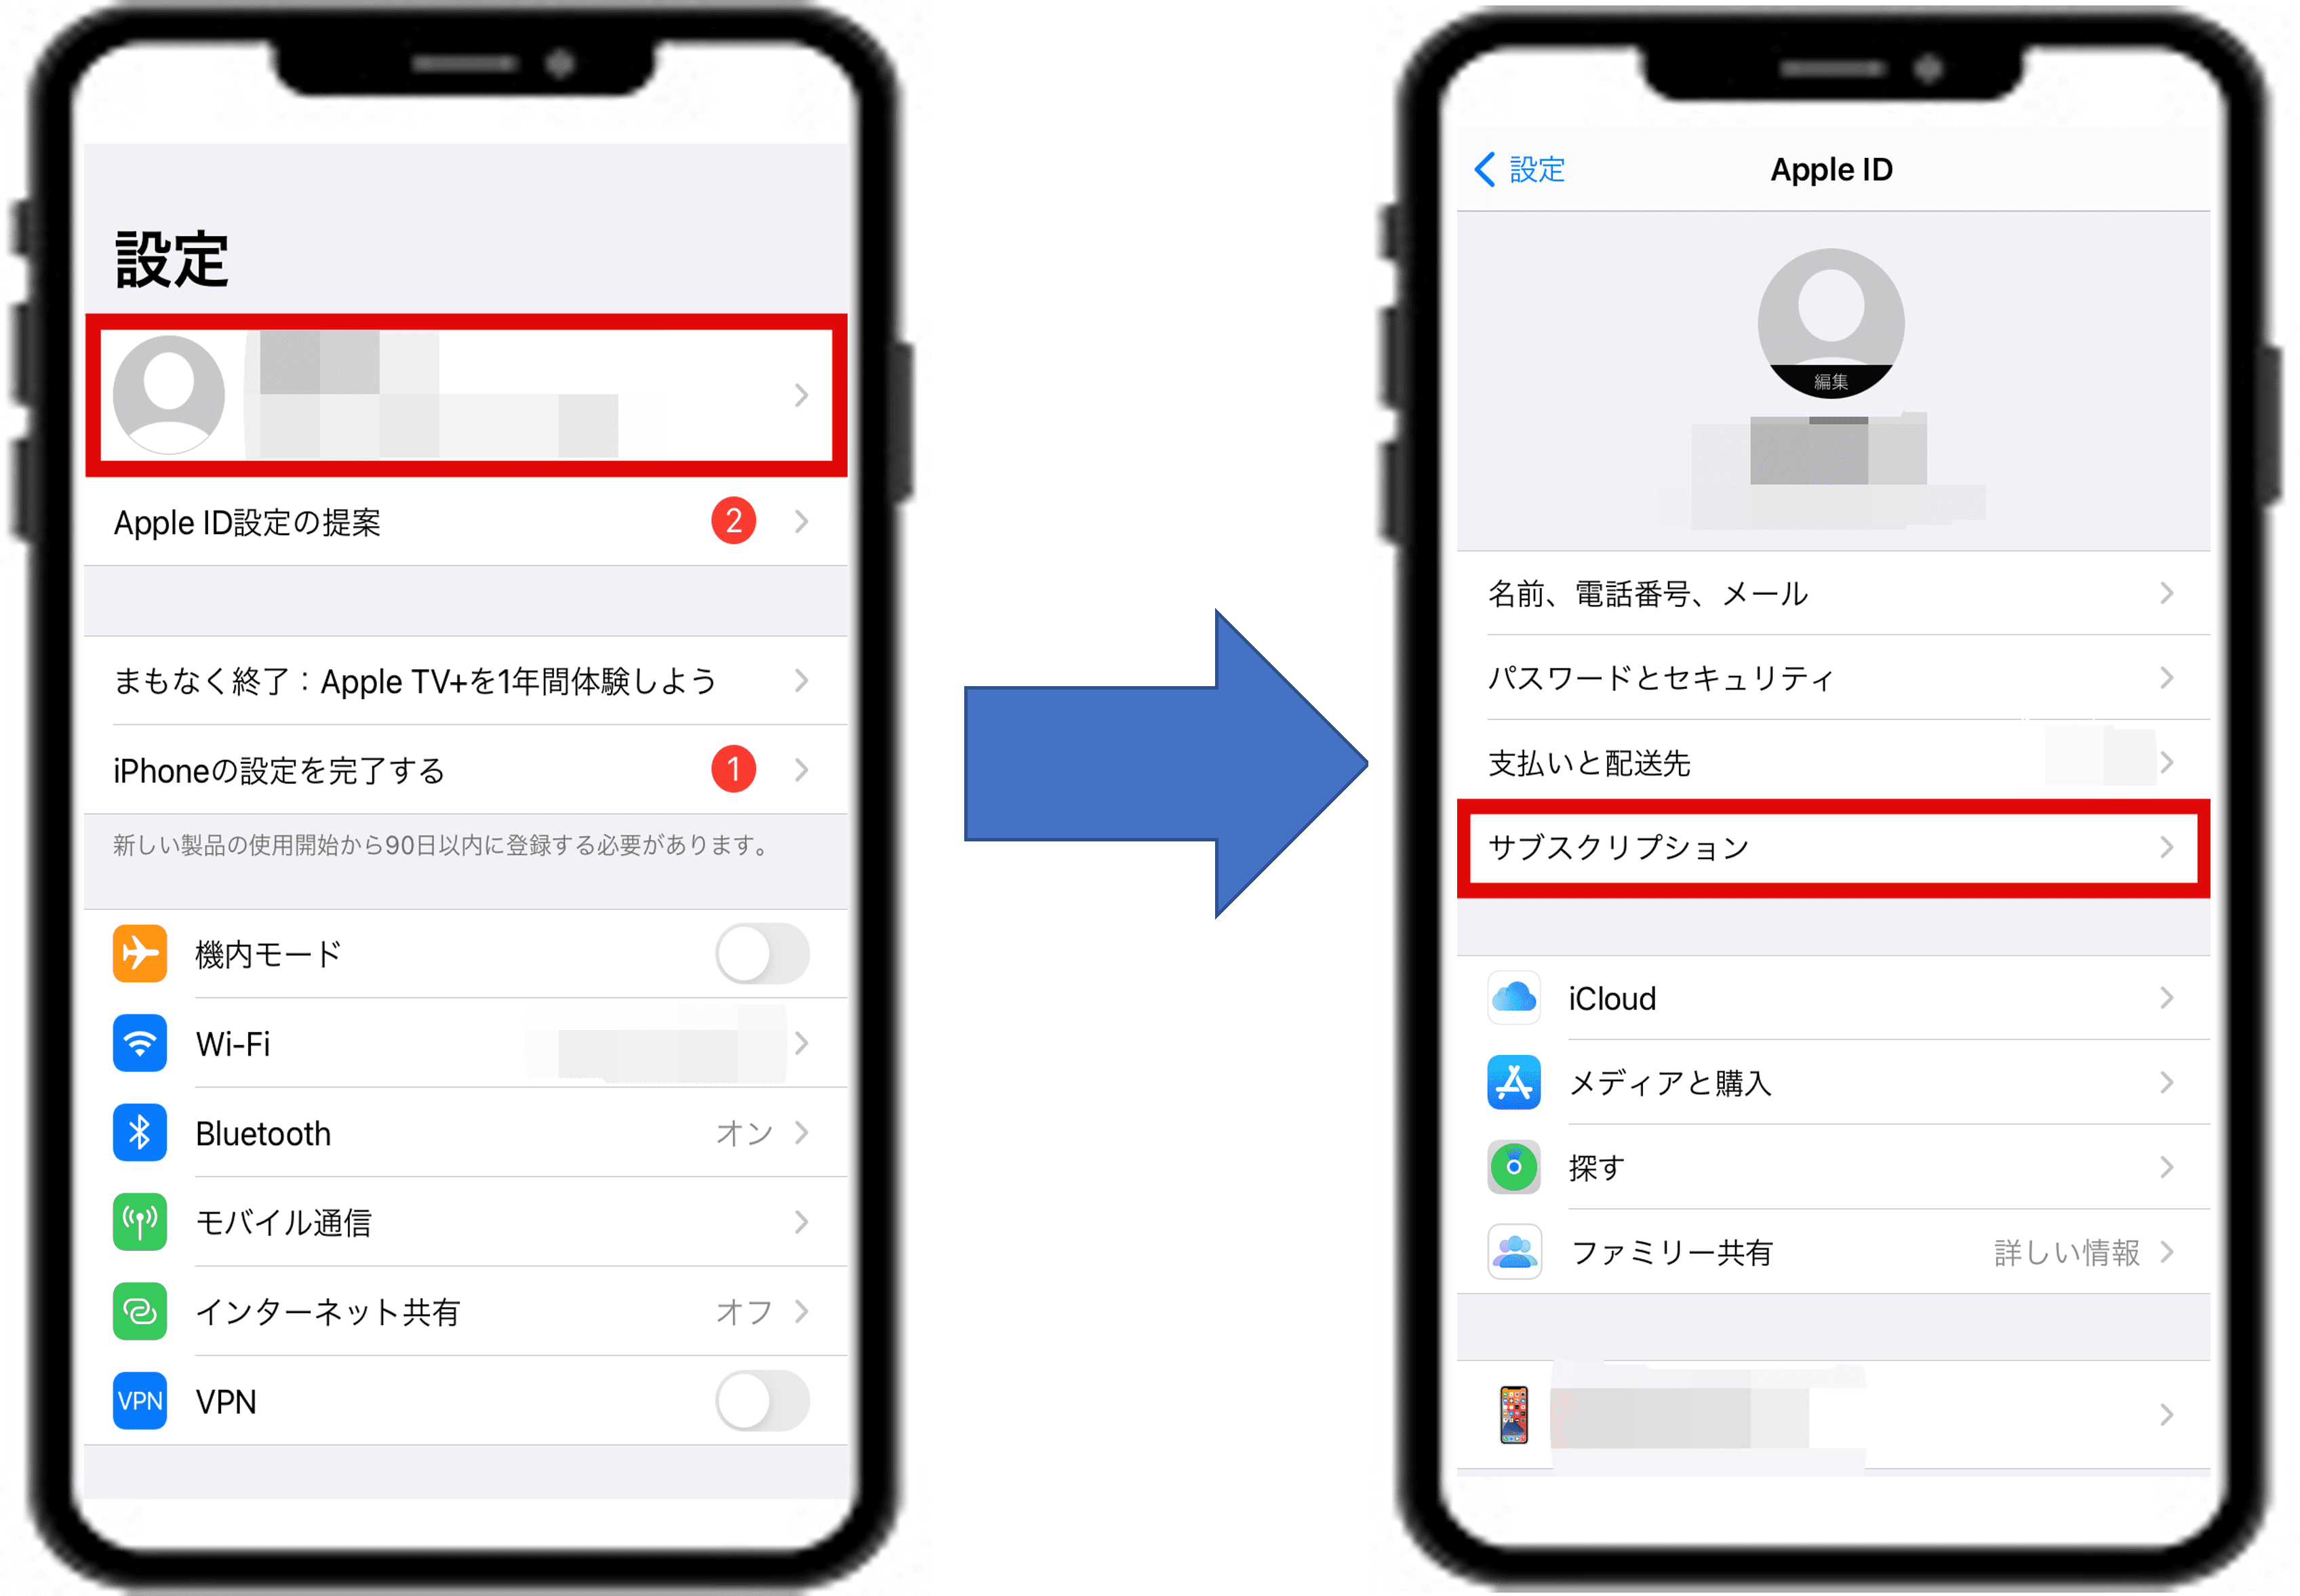 Match(マッチドットコム)のApple ID決済の手順解説画像。詳細は以下。